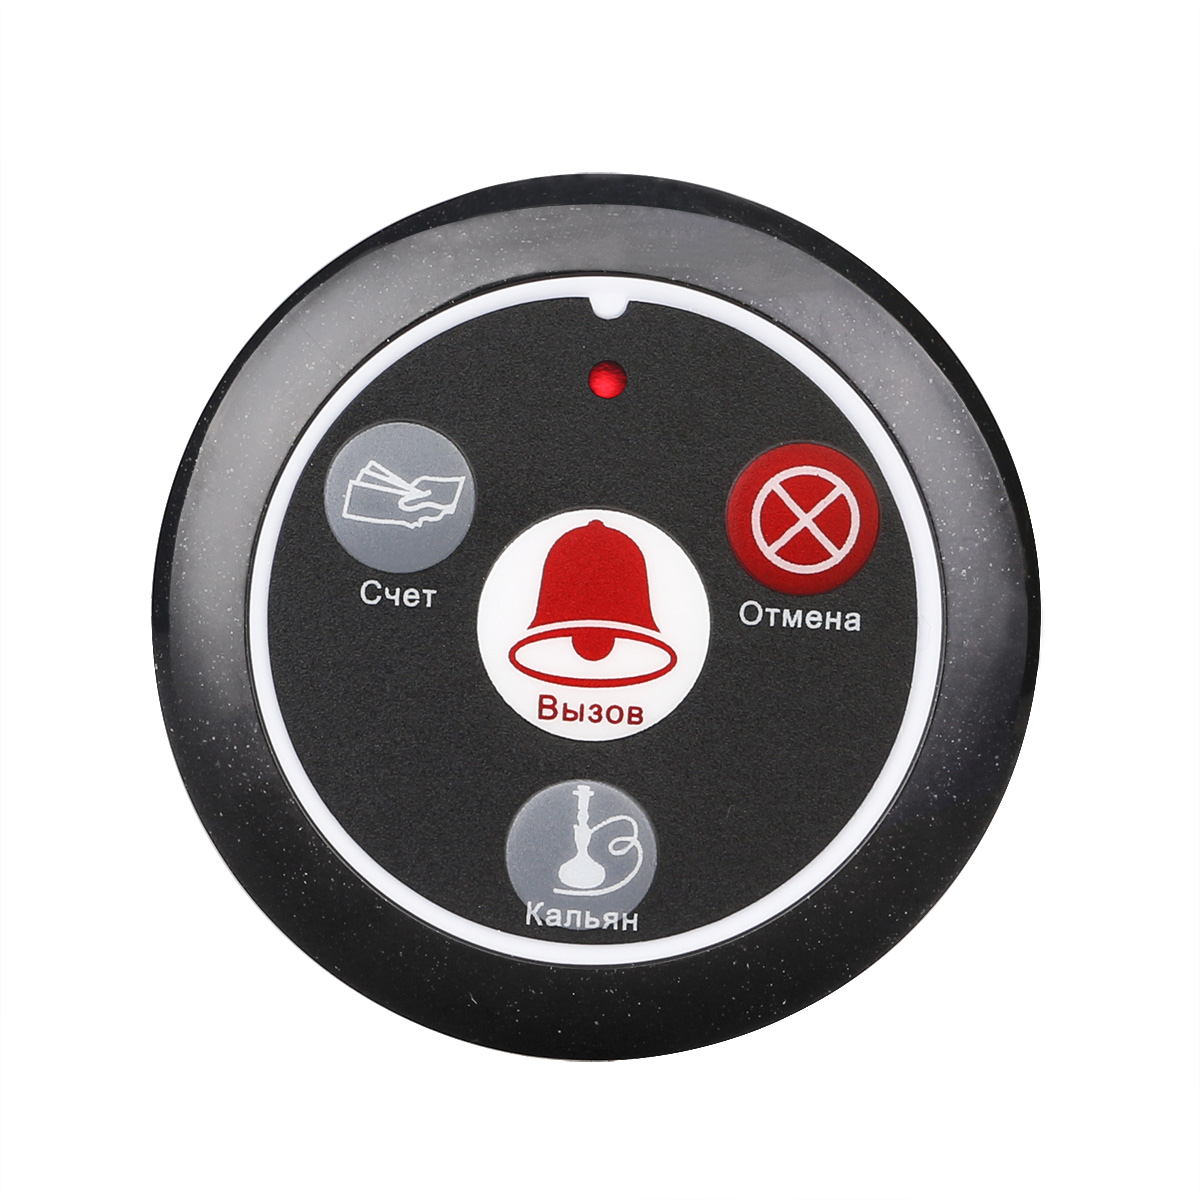 Кнопка вызова персонала Retekess R22117H для клиентов ресторана, кафе, фастфуда часы пейджер для персонала kromix w22552